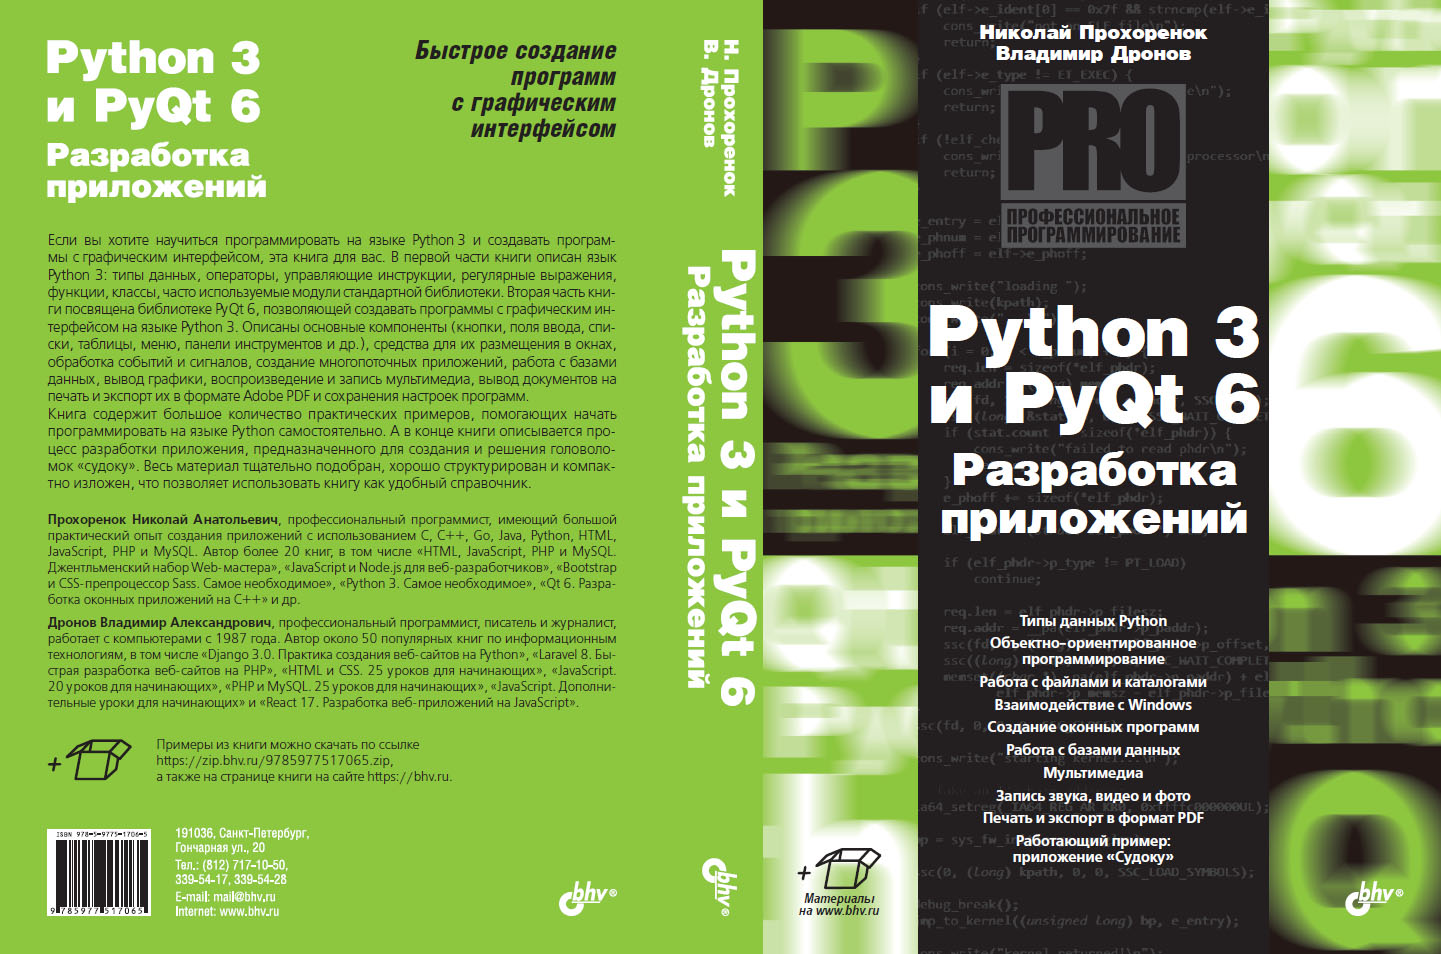 Python 3 и PyQt 6. Разработка приложений